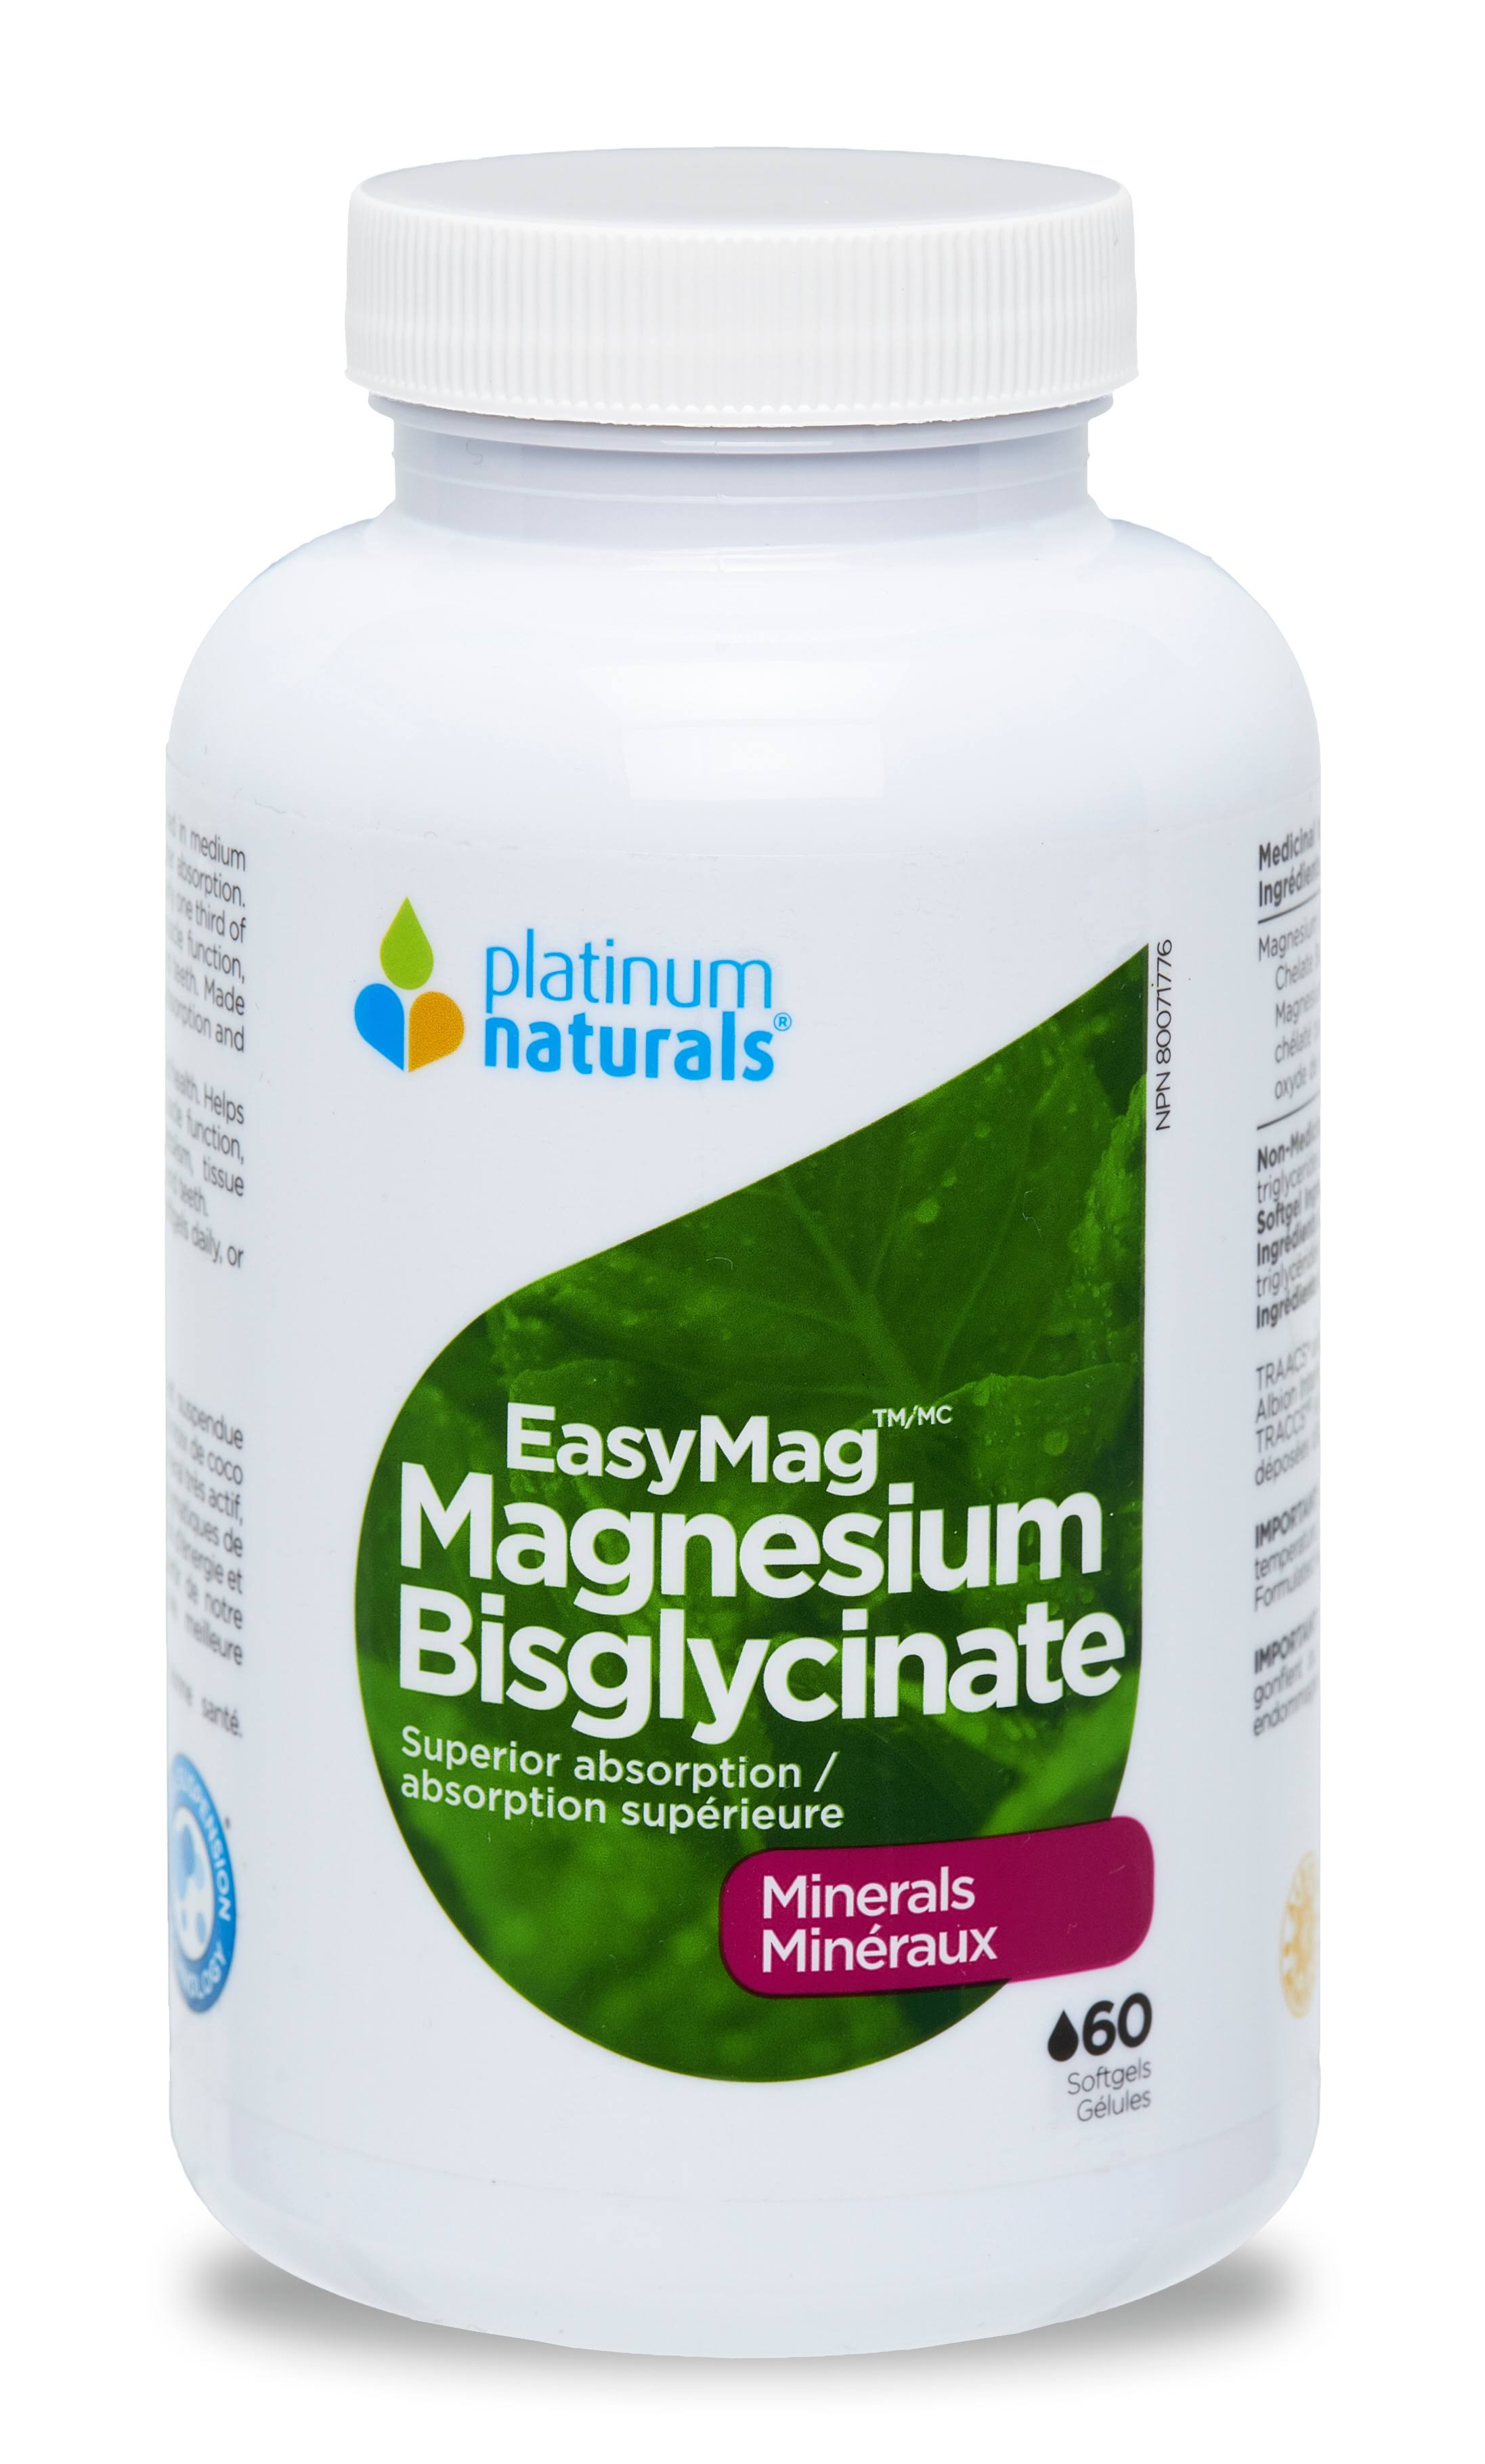 Platinum Naturals EasyMag Magnesium Bisglycinate (60 Softgels)